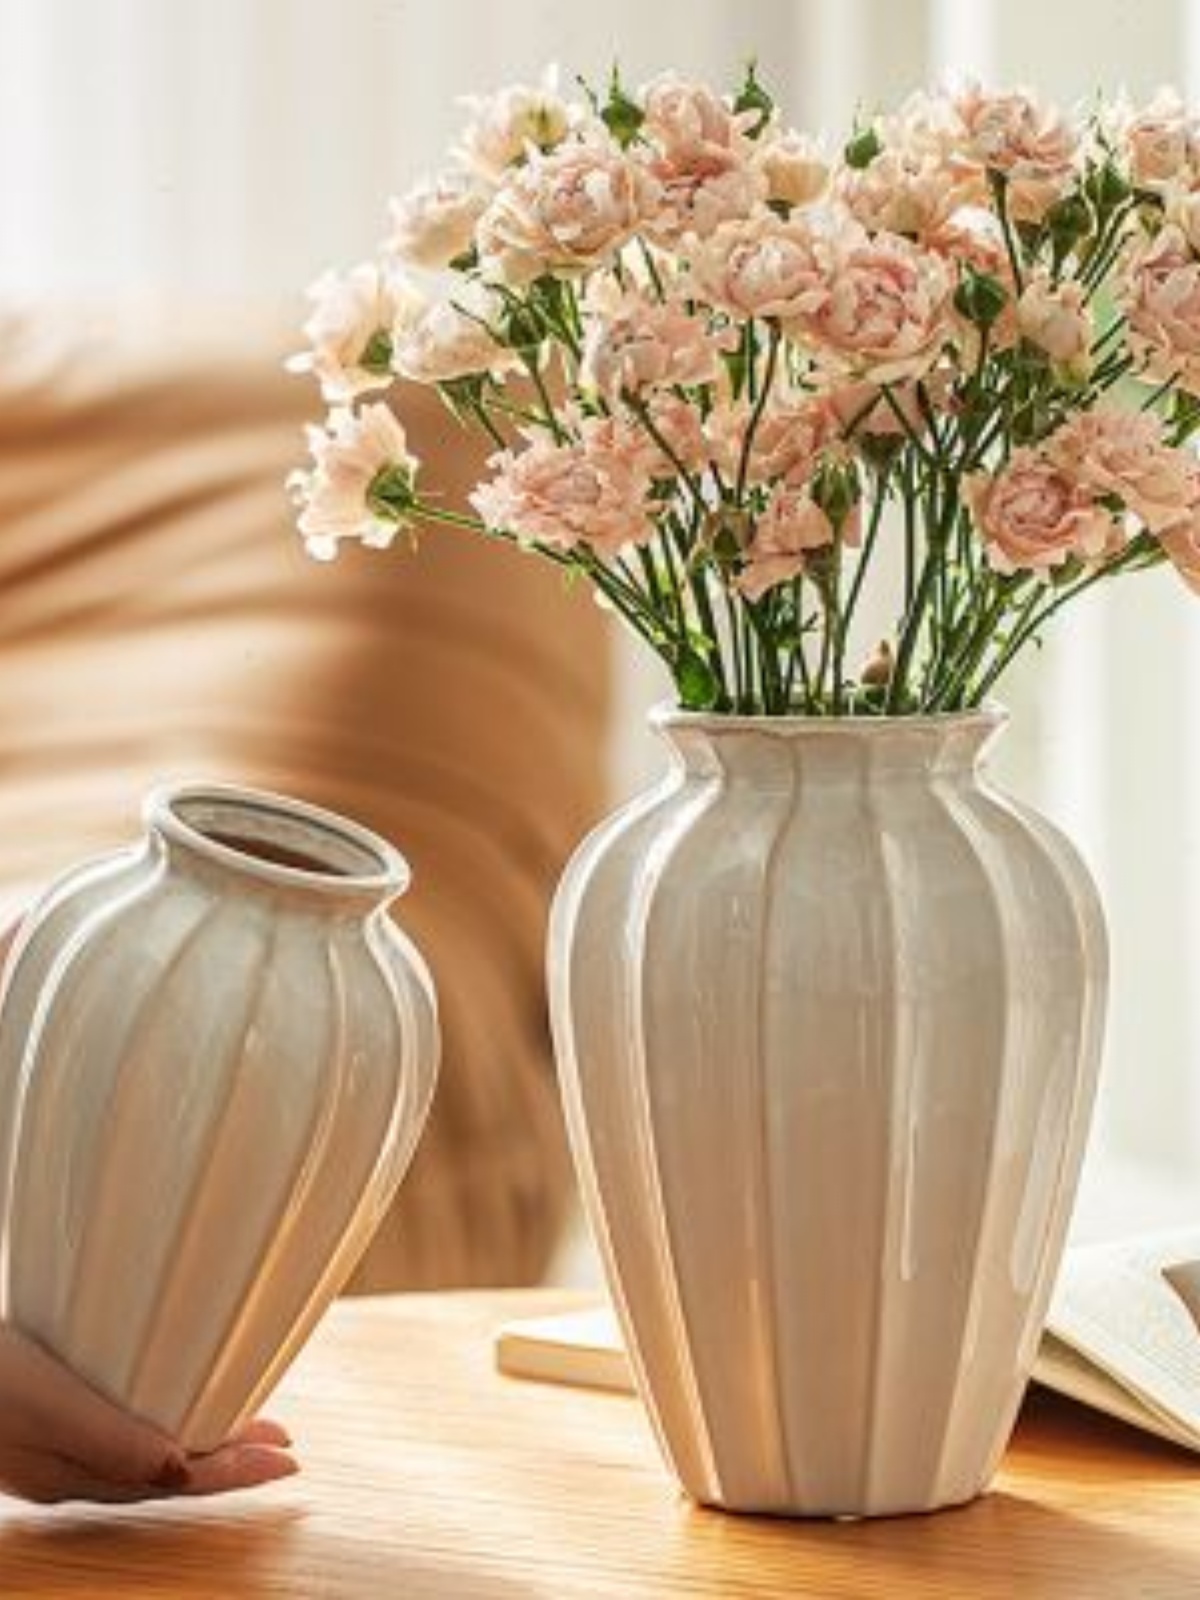 简约白色陶瓷花瓶客厅餐桌插花摆件干花复古粗陶创意台面装饰器皿